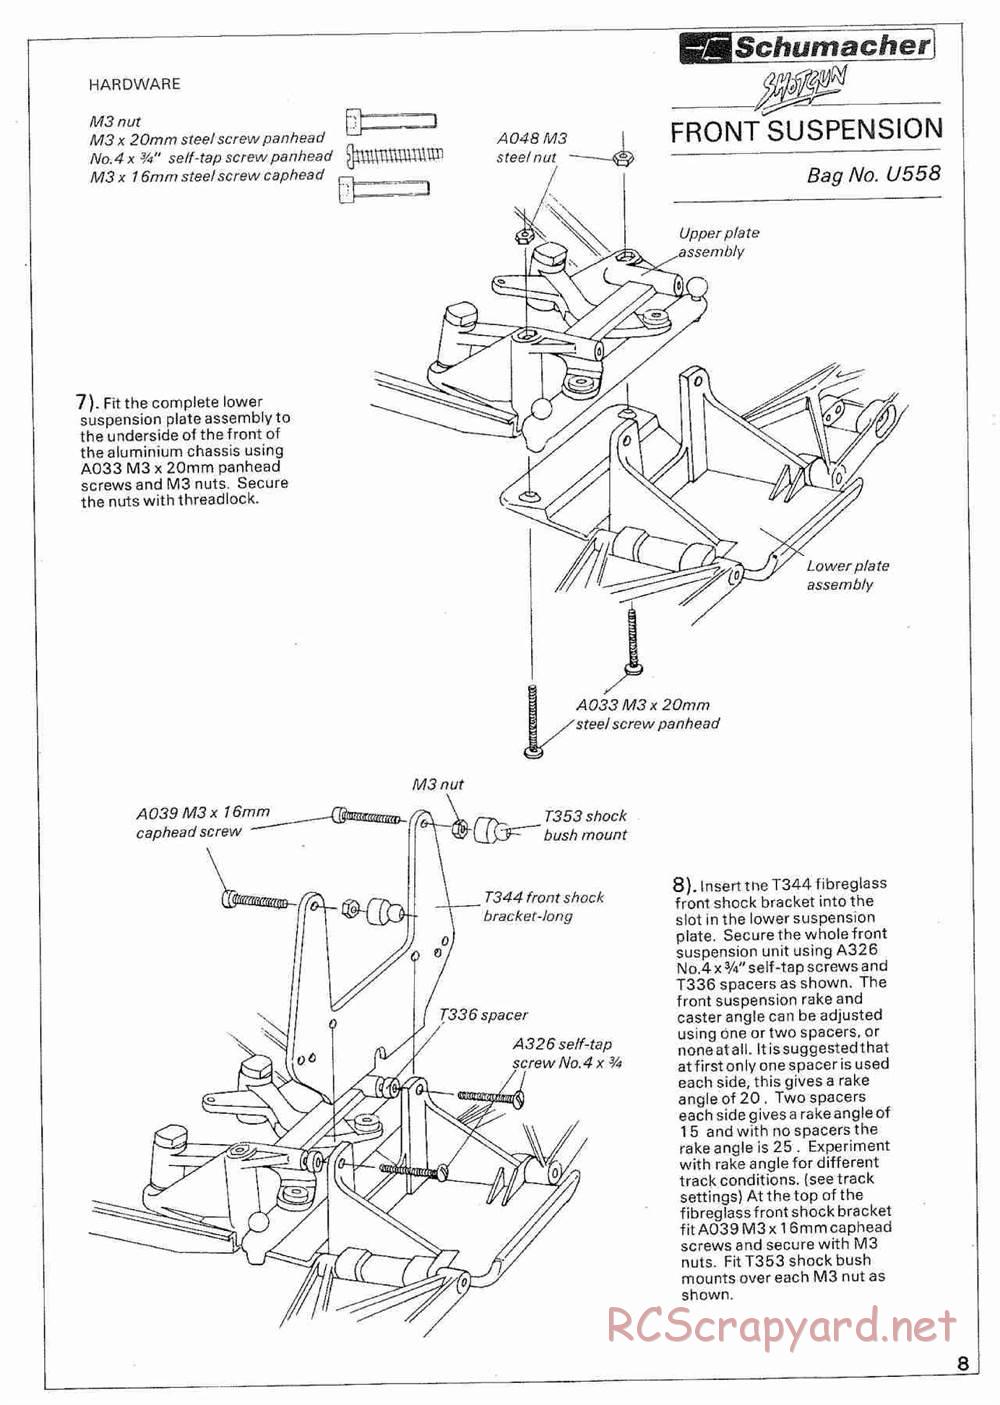 Schumacher - Shotgun - Manual - Page 9